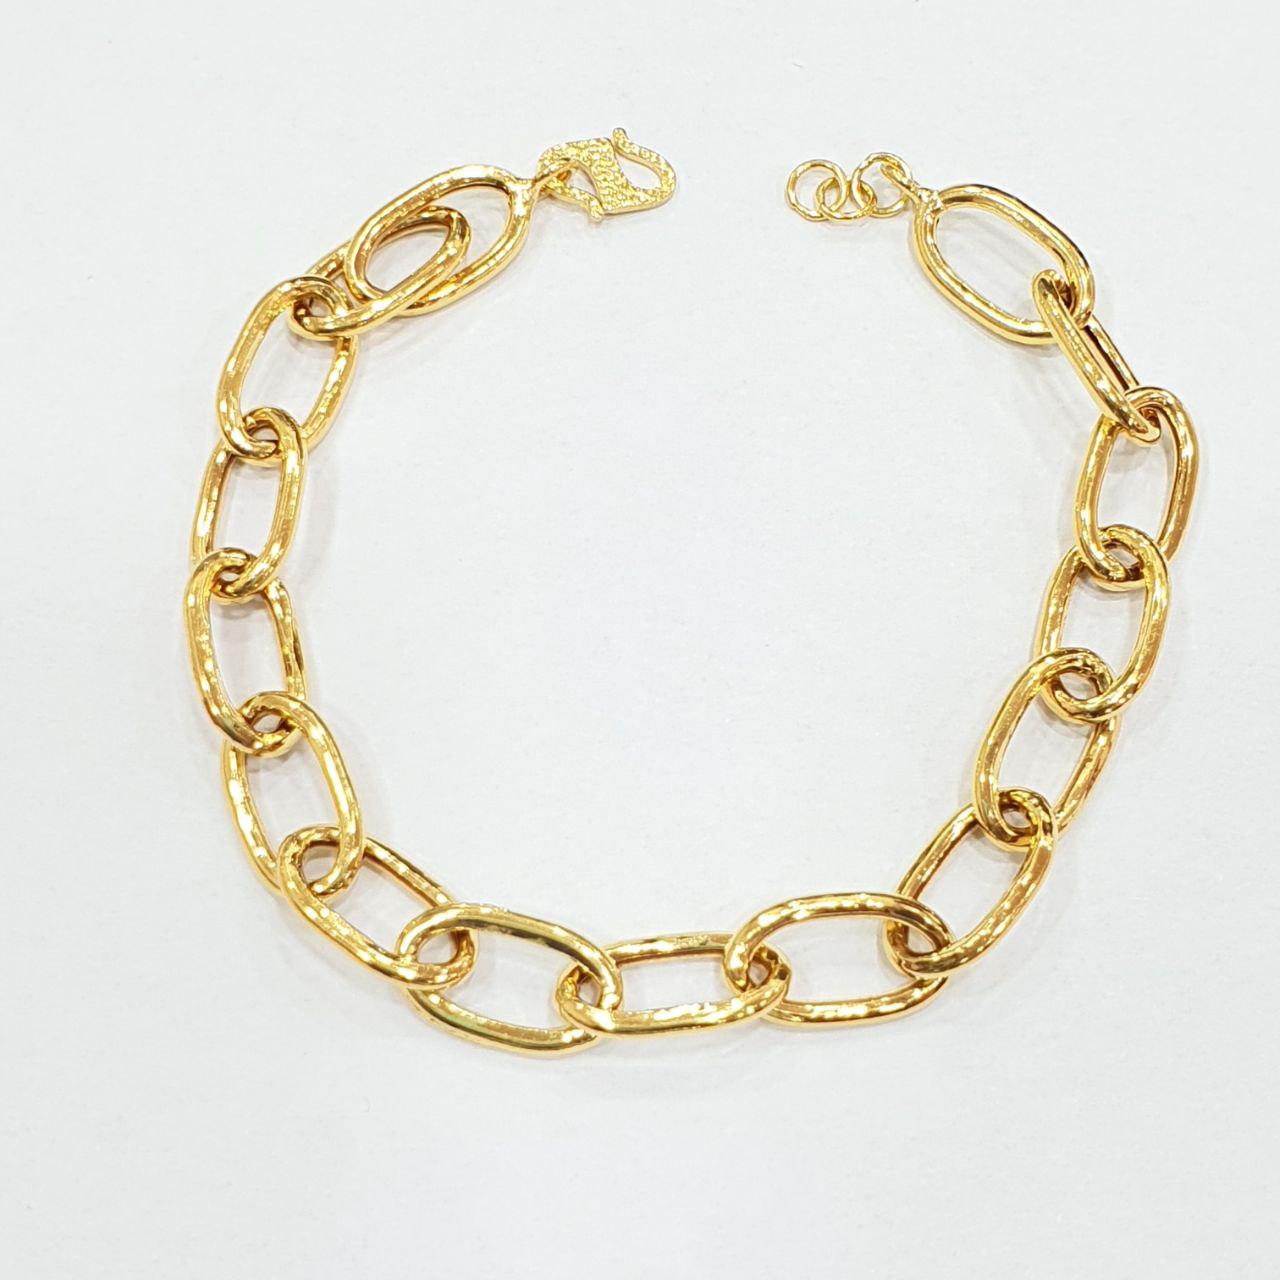 22k / 916 Gold Hollow Chain Link Bracelet (Light Weight)-916 gold-Best Gold Shop